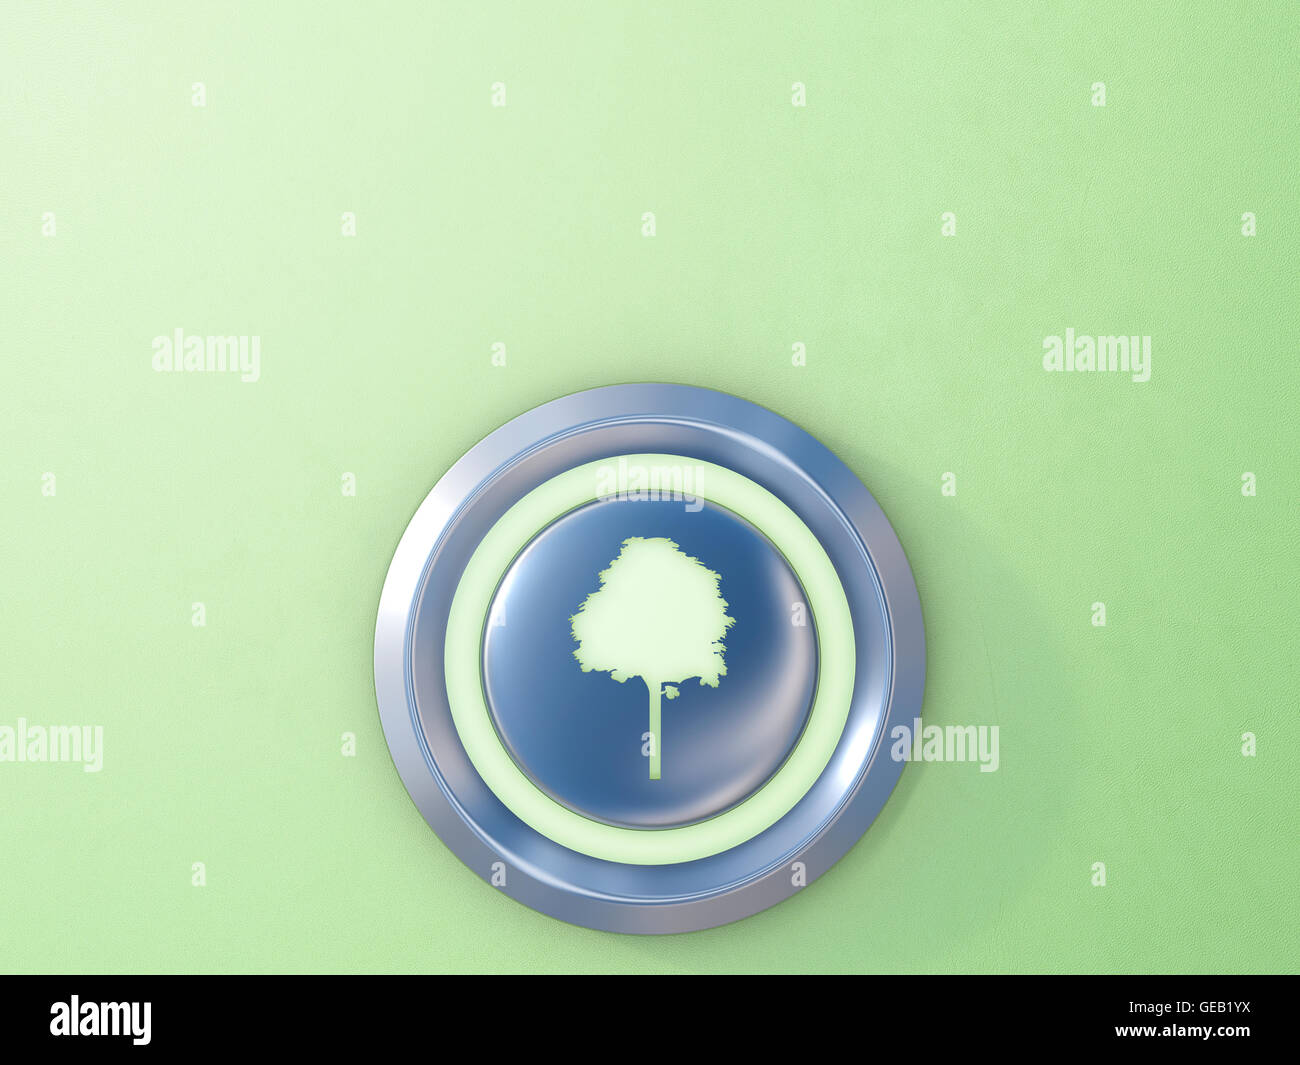 Appuyer sur le bouton avec l'icône de l'arbre vert Banque D'Images